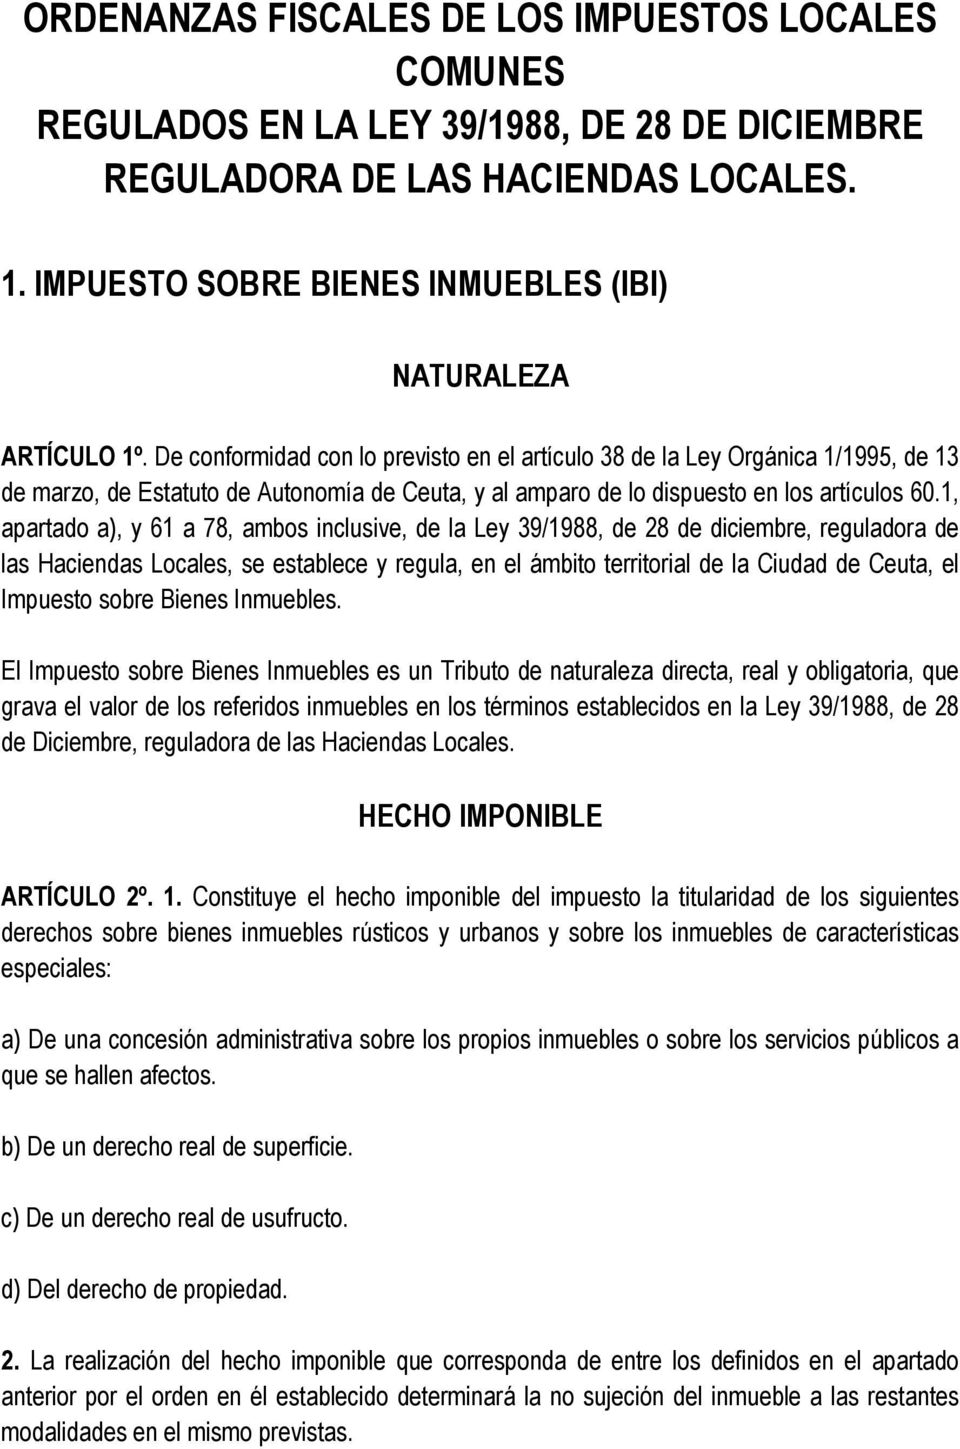 De conformidad con lo previsto en el artículo 38 de la Ley Orgánica 1/1995, de 13 de marzo, de Estatuto de Autonomía de Ceuta, y al amparo de lo dispuesto en los artículos 60.